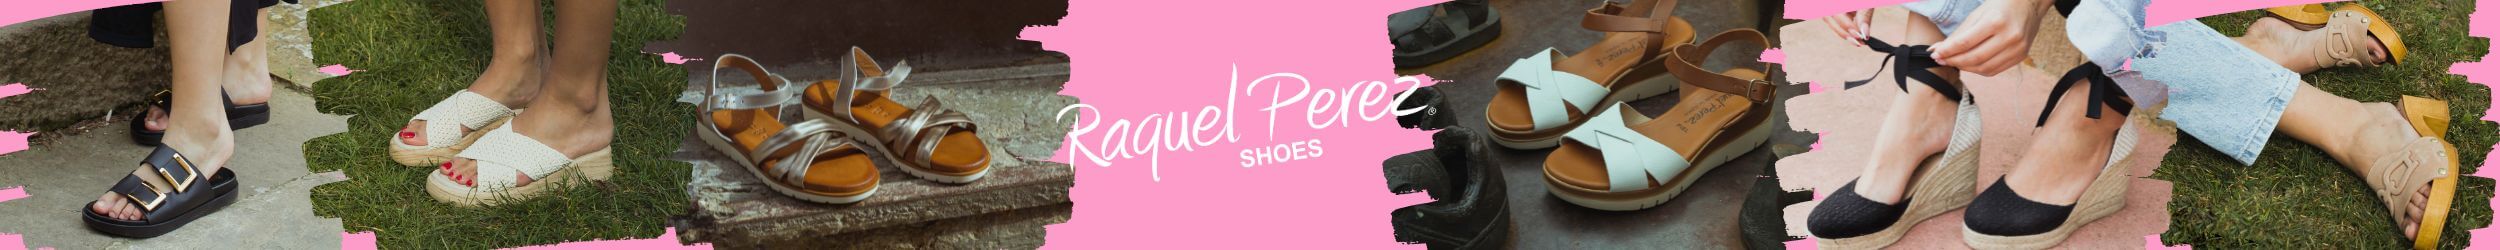 Raquel Pérez Shoes